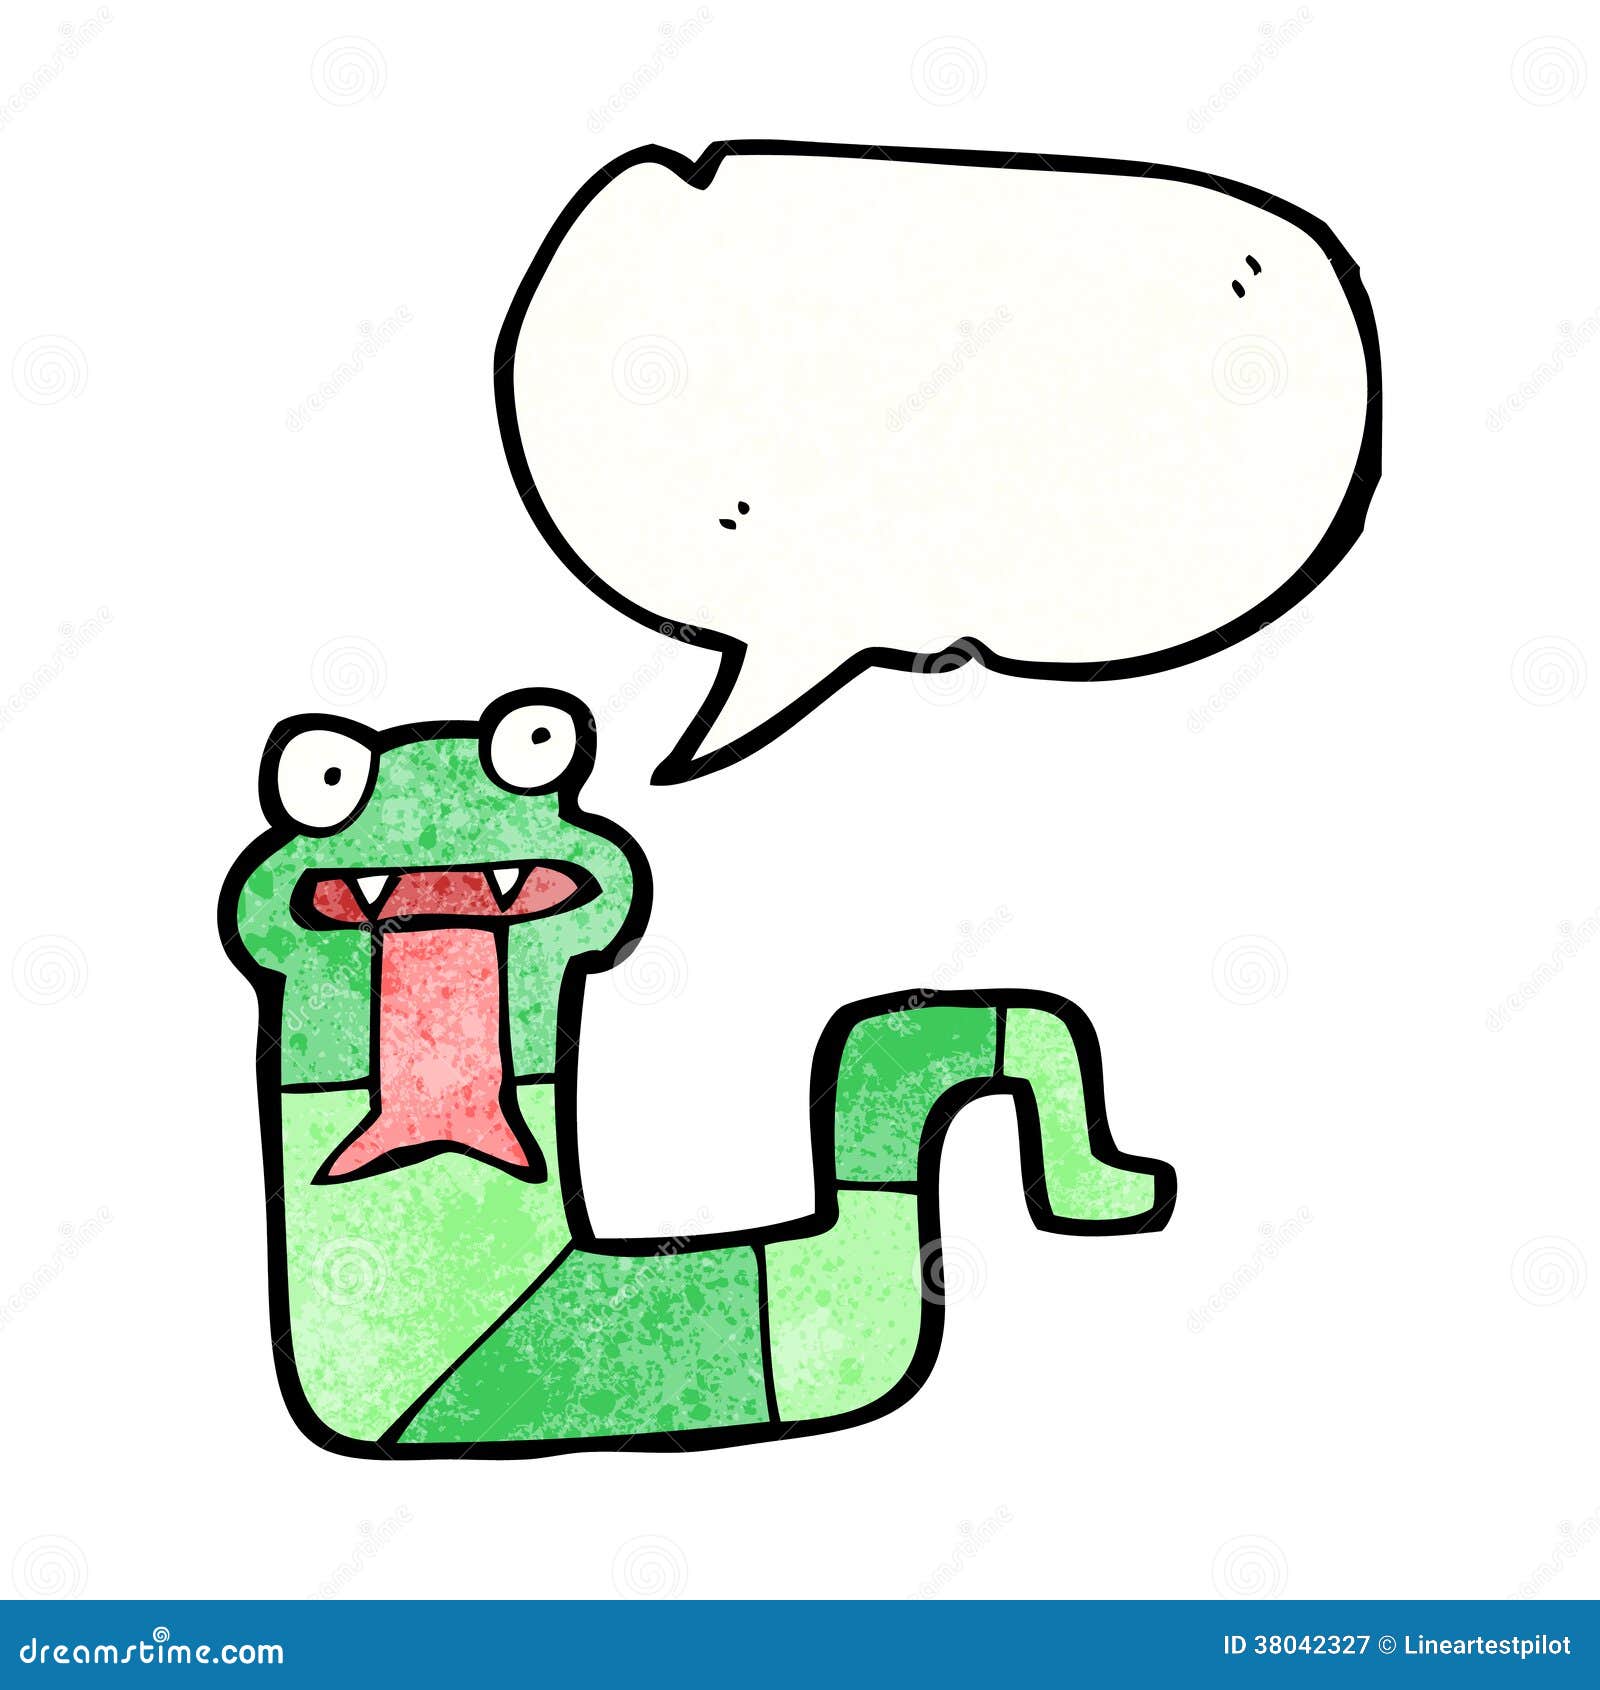 Cartoon snake hissing stock vector. Illustration of silly - 38042327